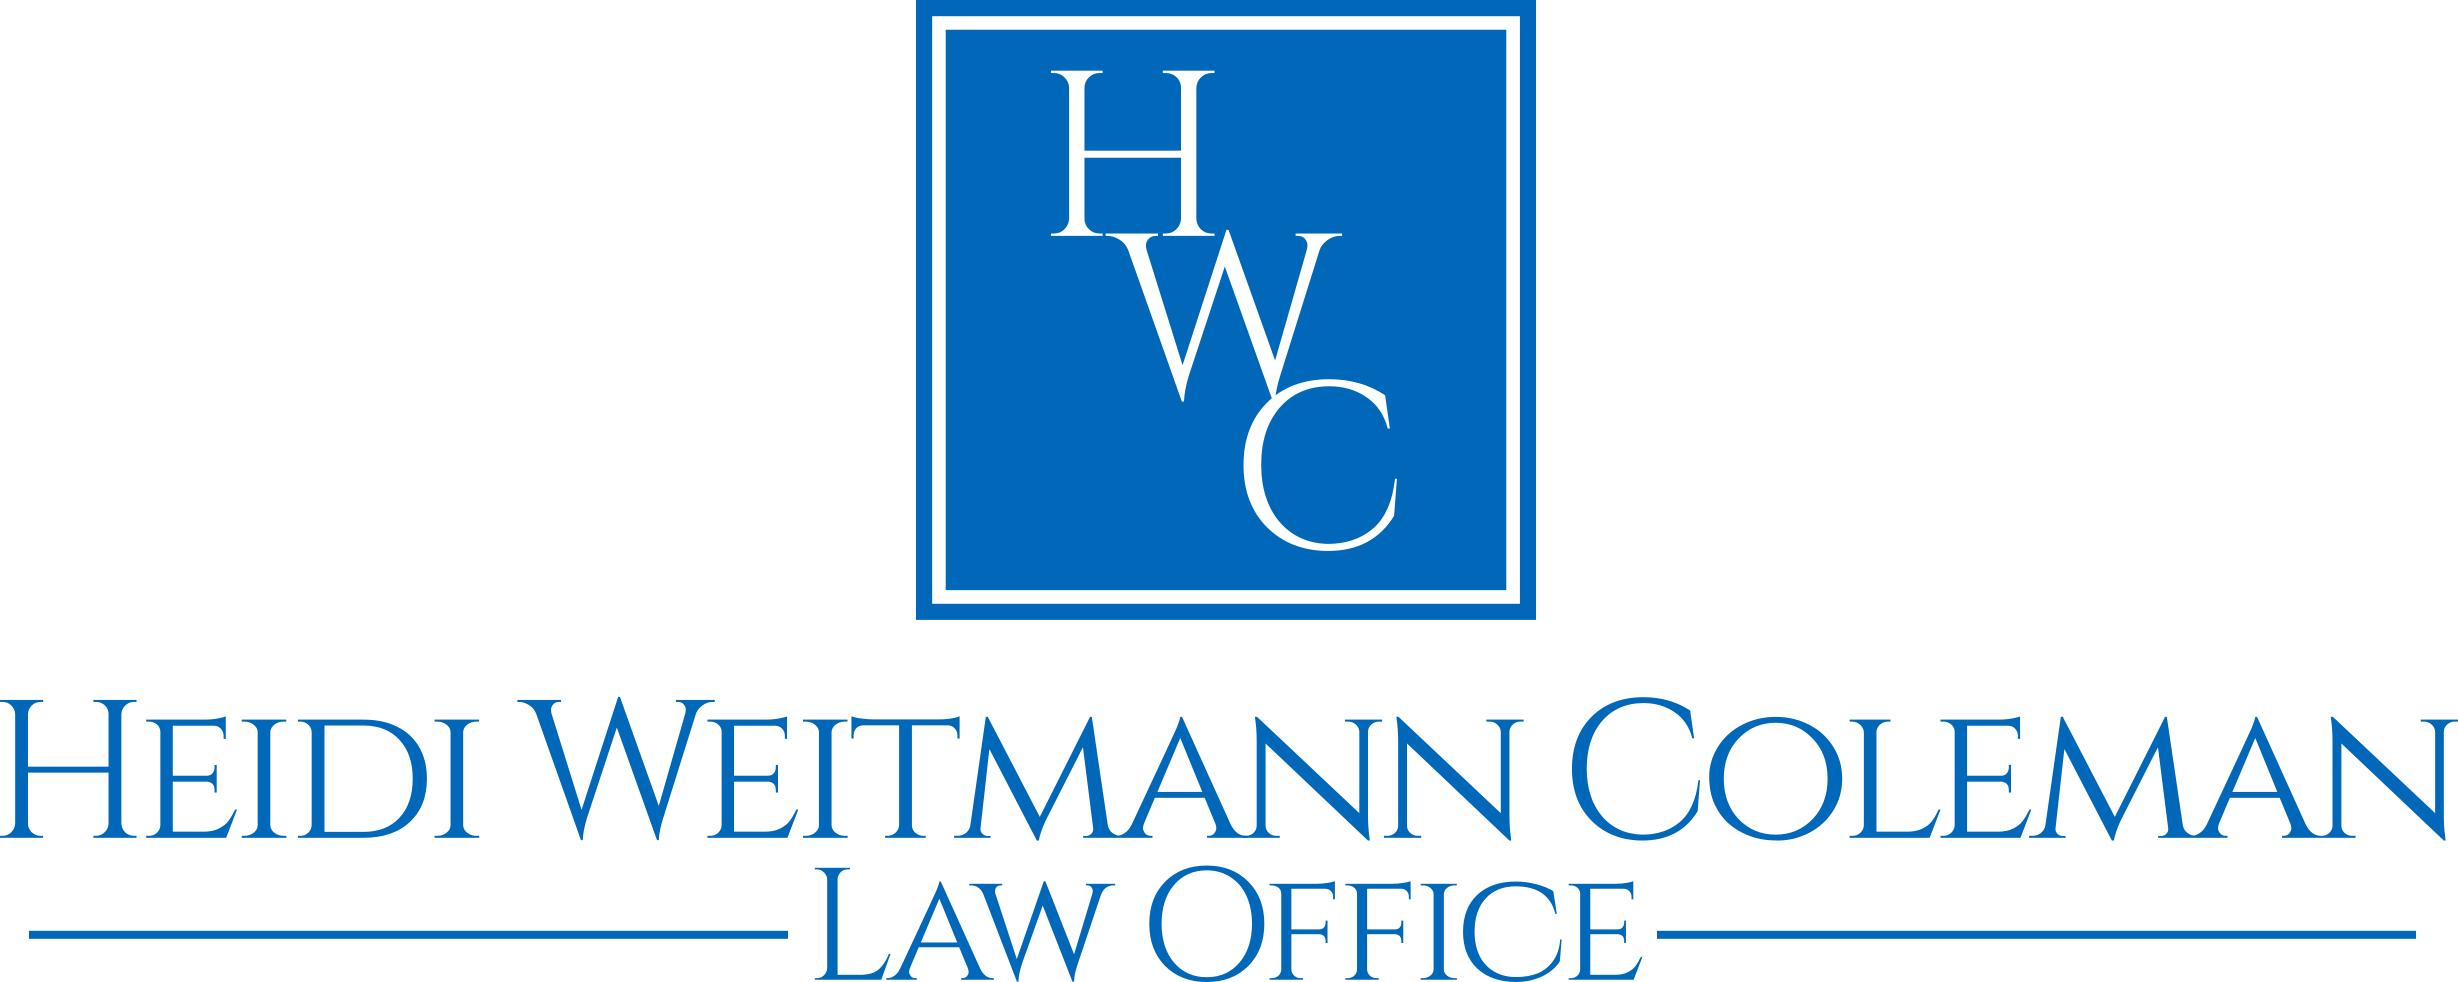 Heidi Weitmann Coleman, Law Office